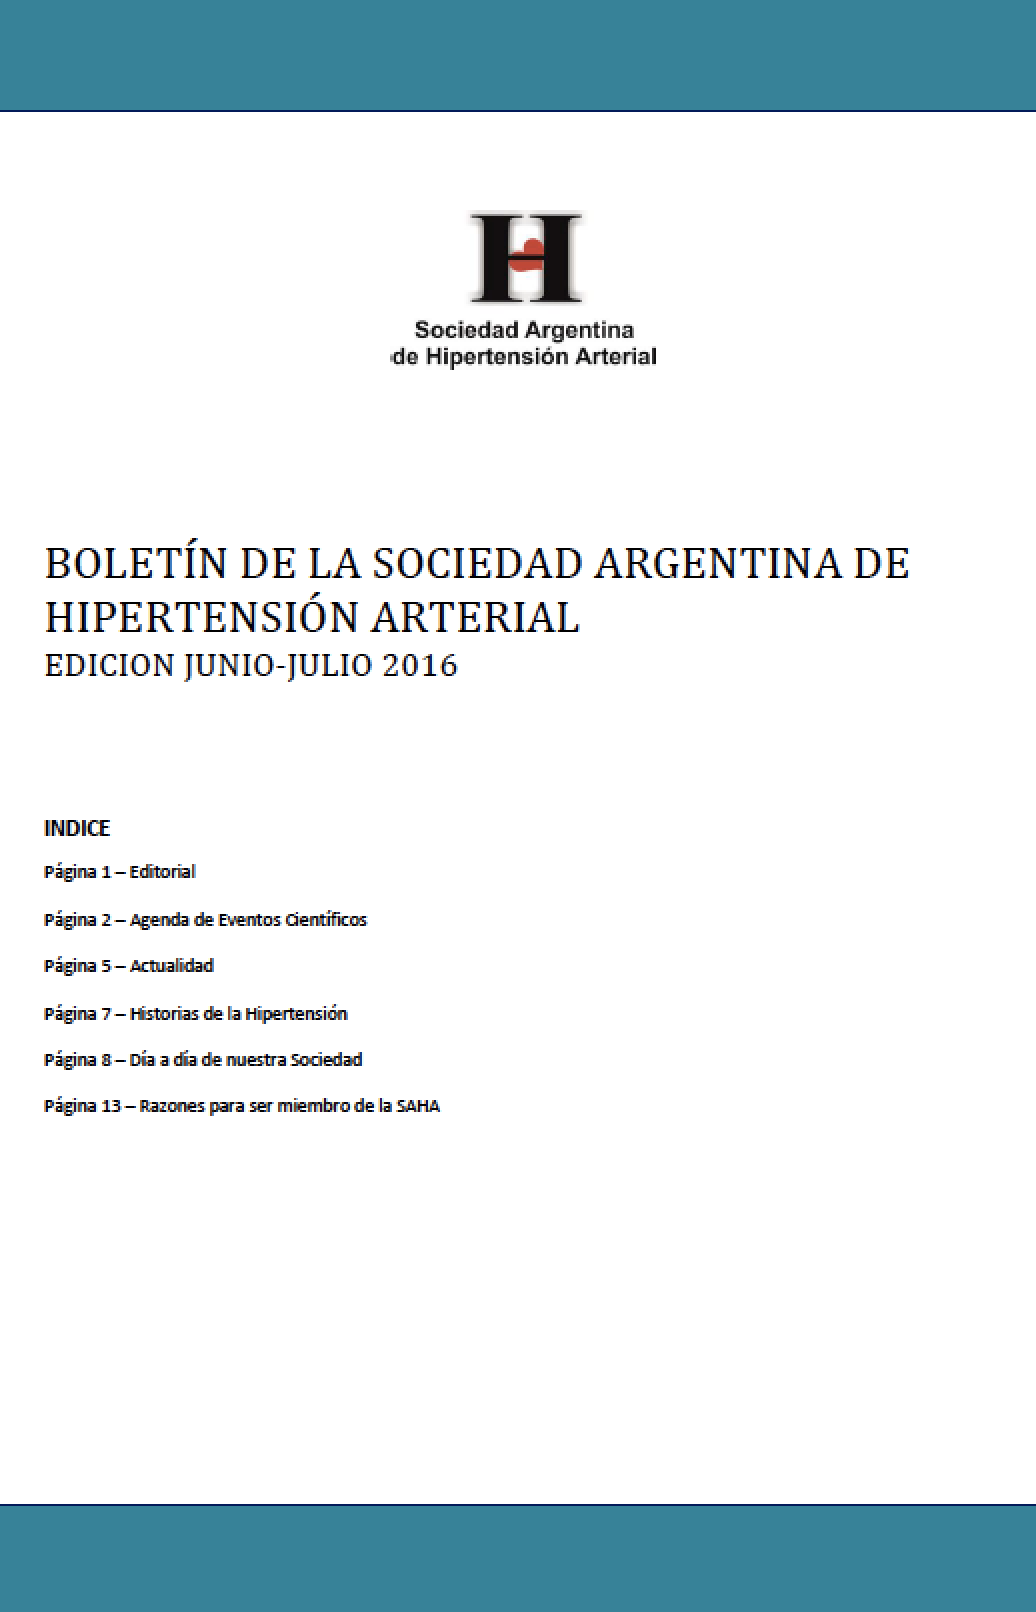 Boletín Periódico Sociedad Argentina de Hipertensión Arterial Junio - Julio 2016